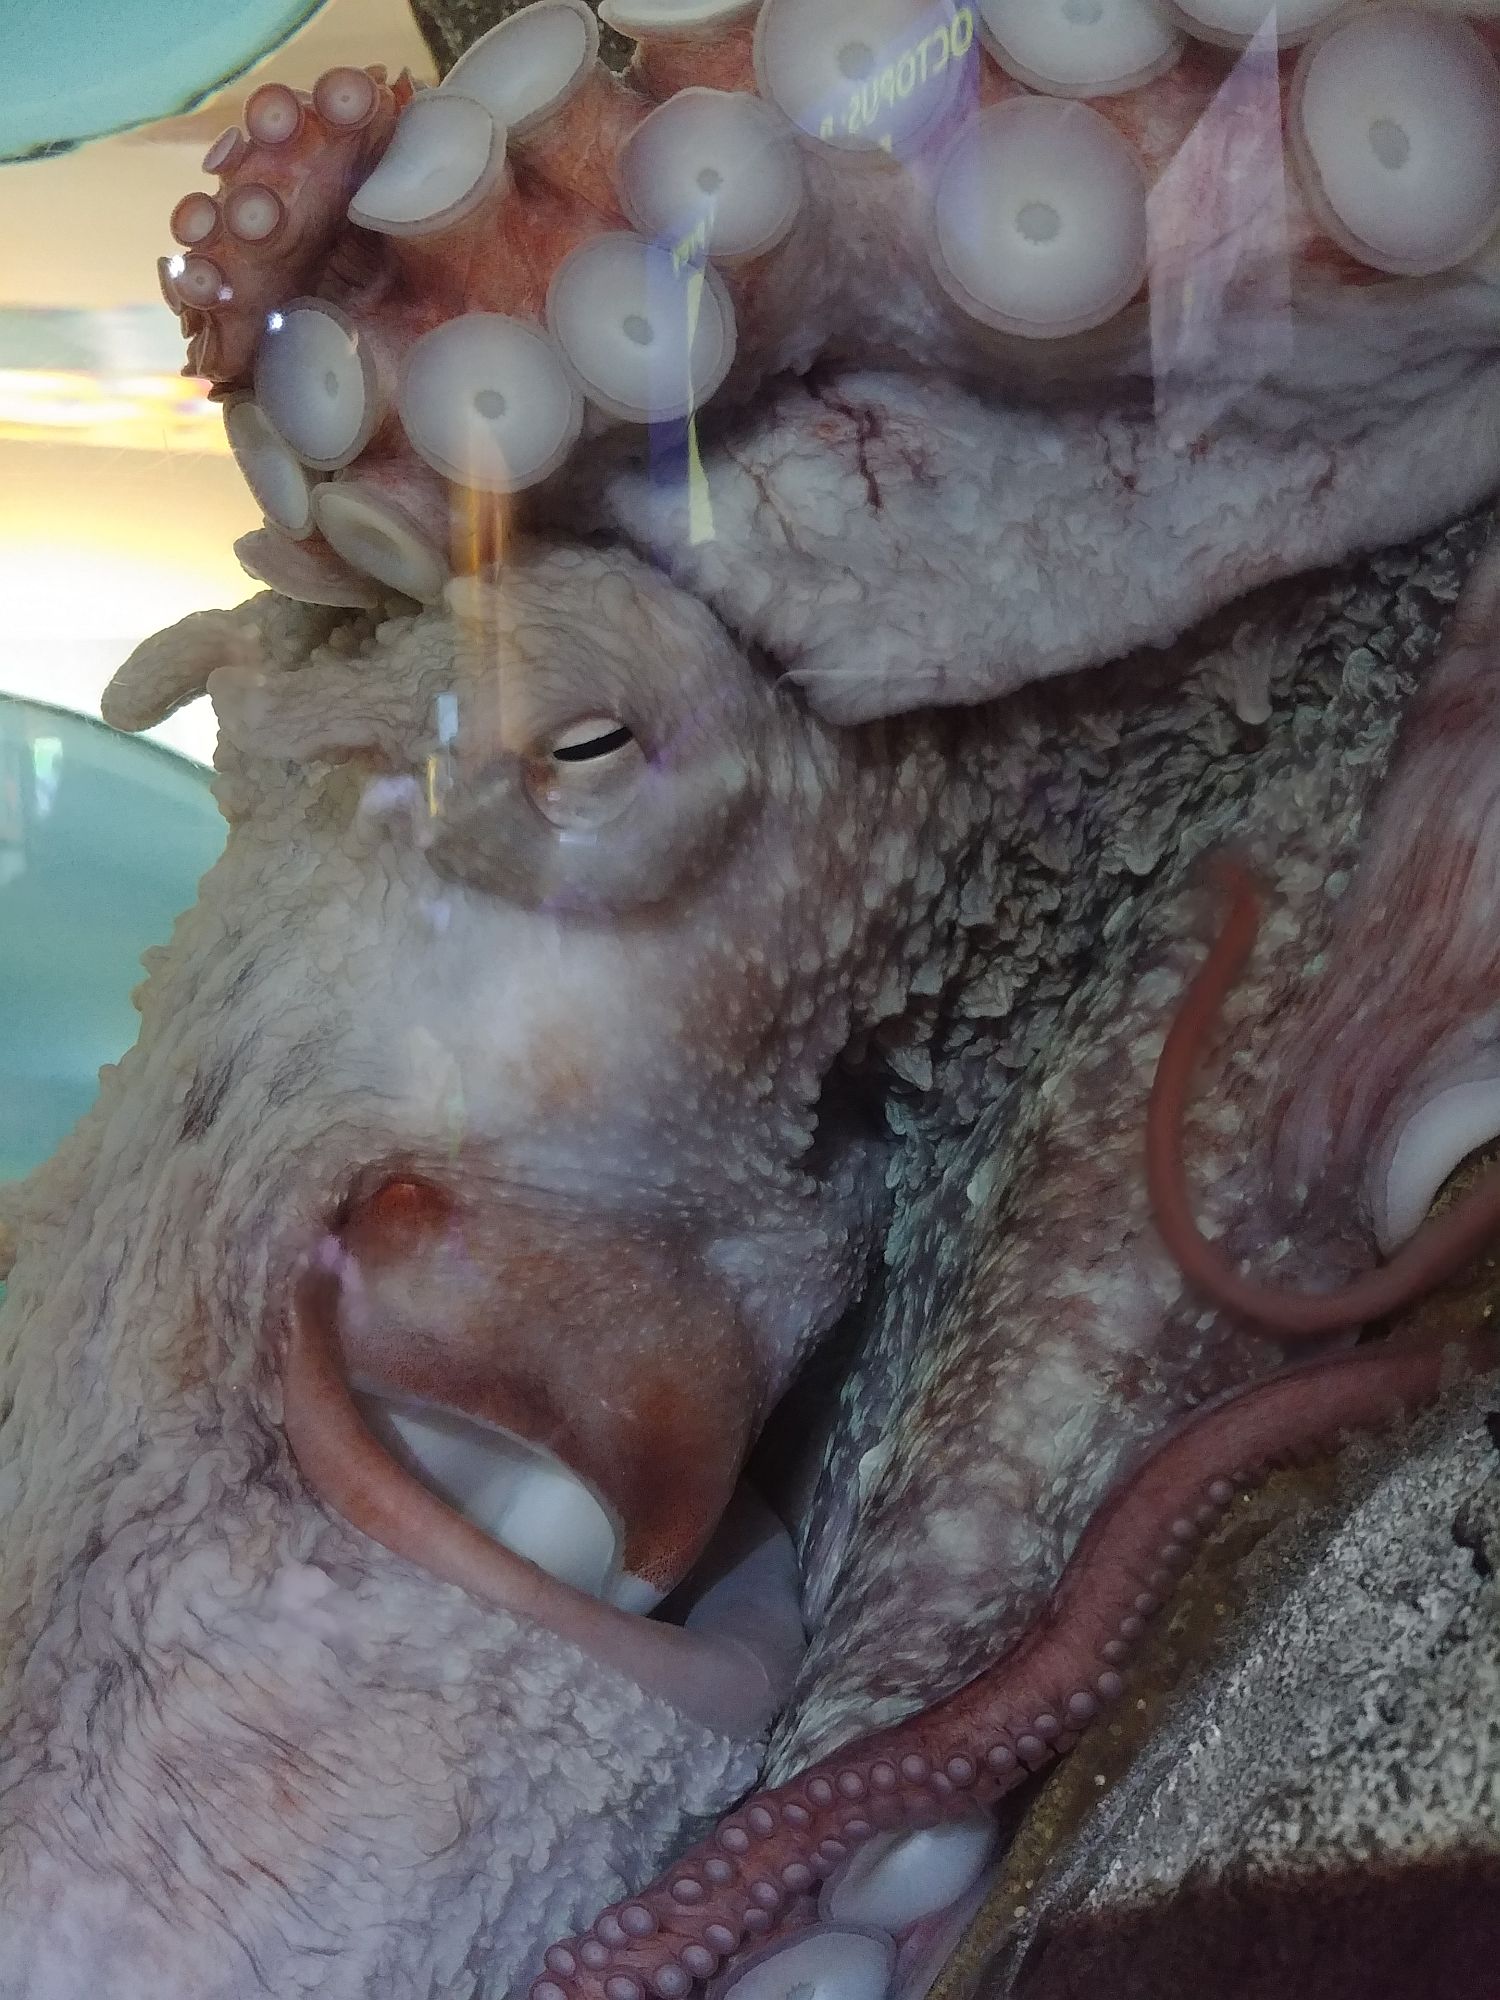 Seattle Aquarium - 03 - Giant octopus